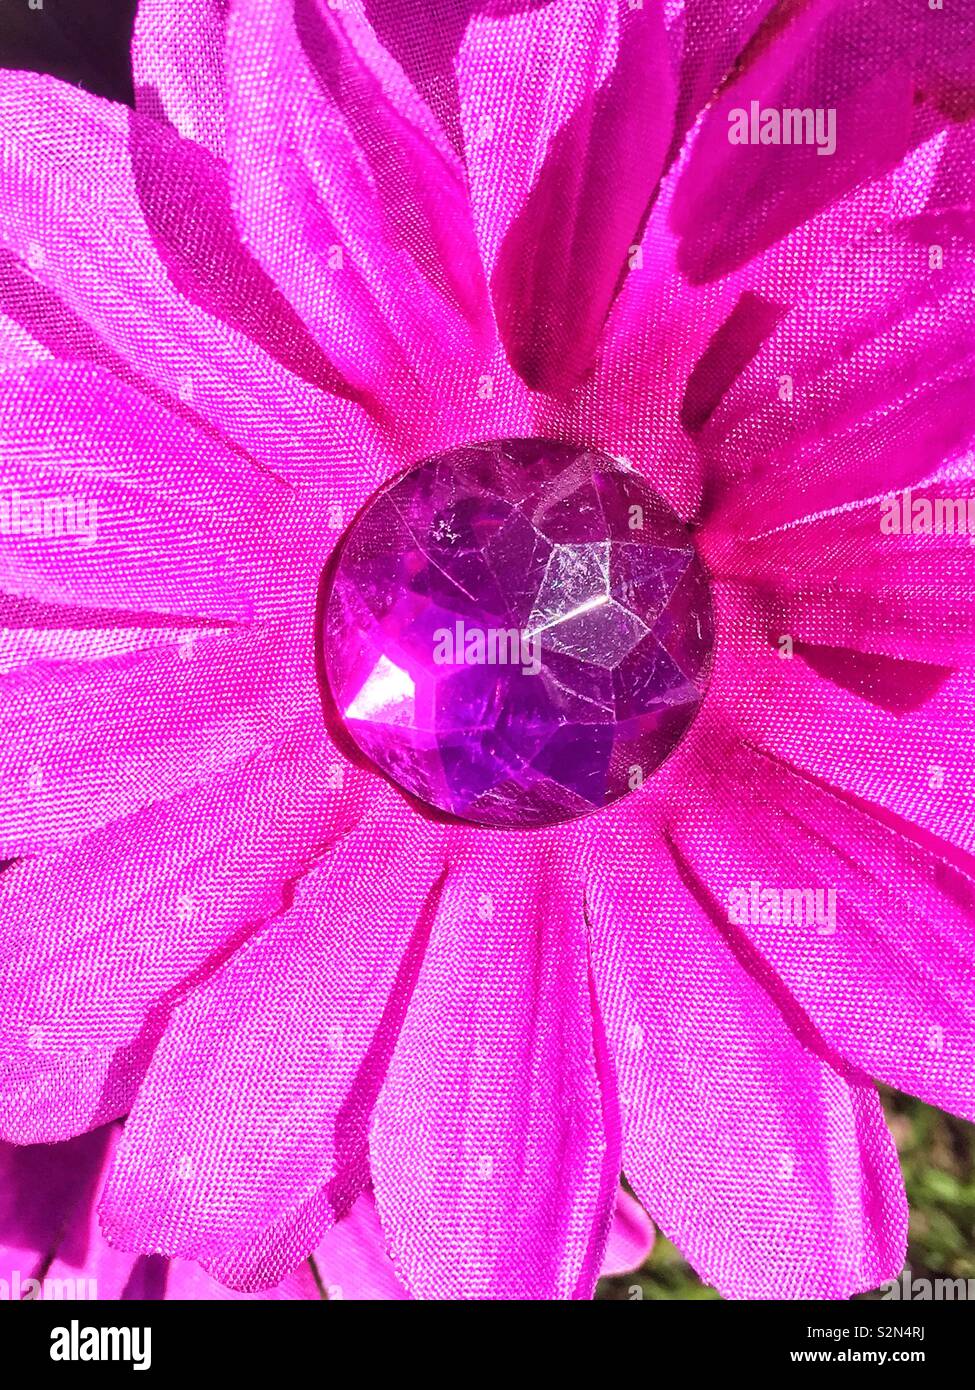 Full frame of a purple plastic flower in full bloom. Stock Photo